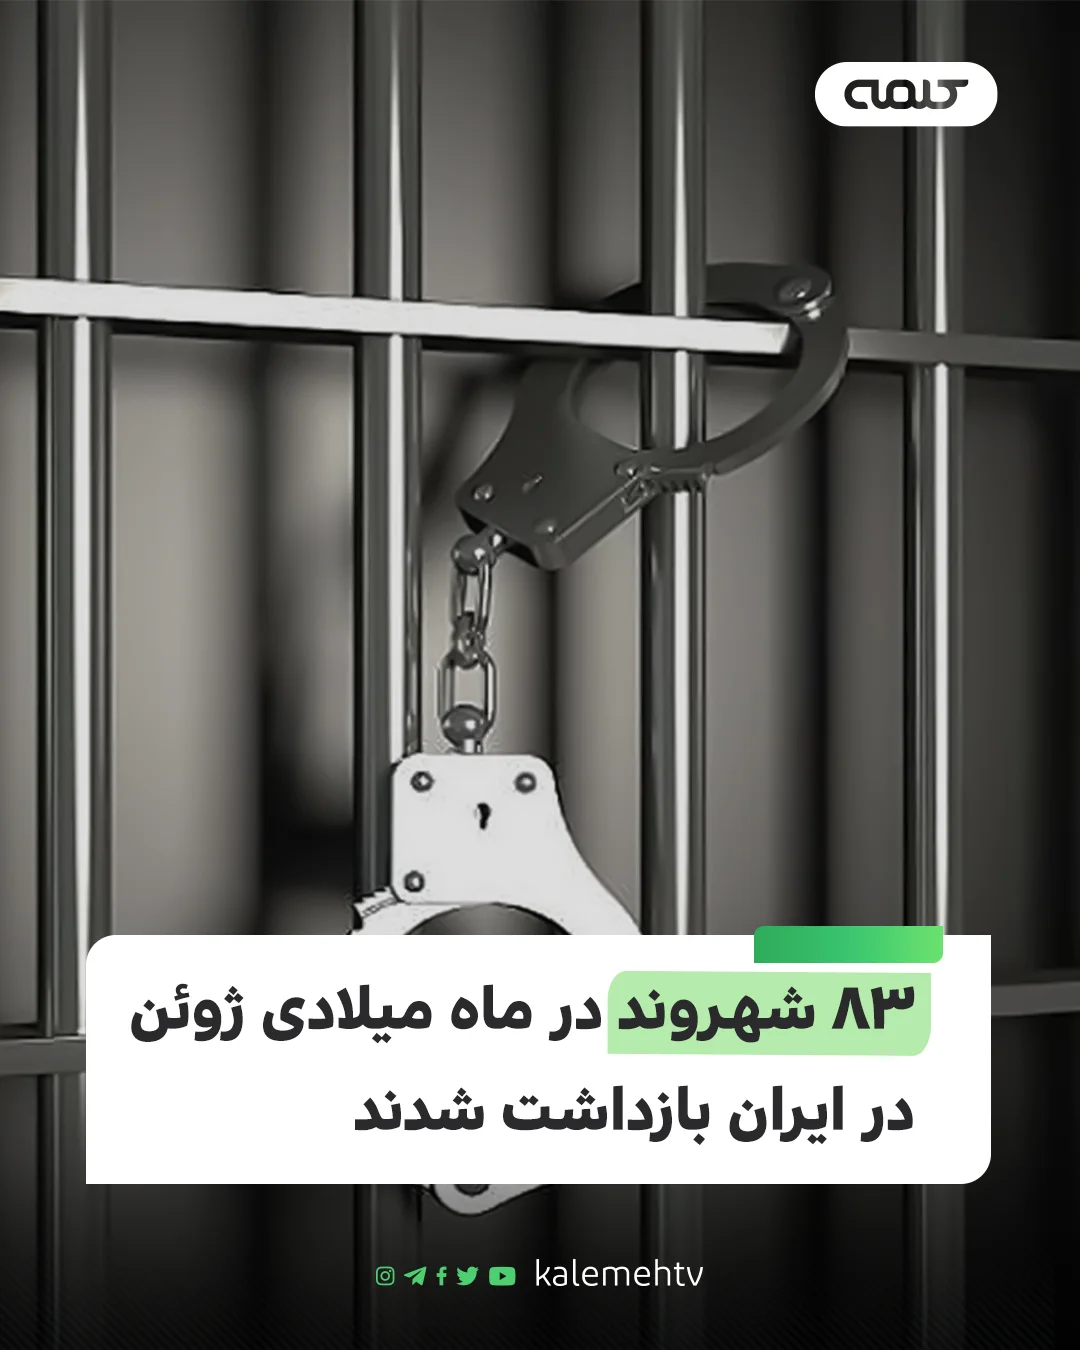 ۸۳ شهروند ایران بازداشت